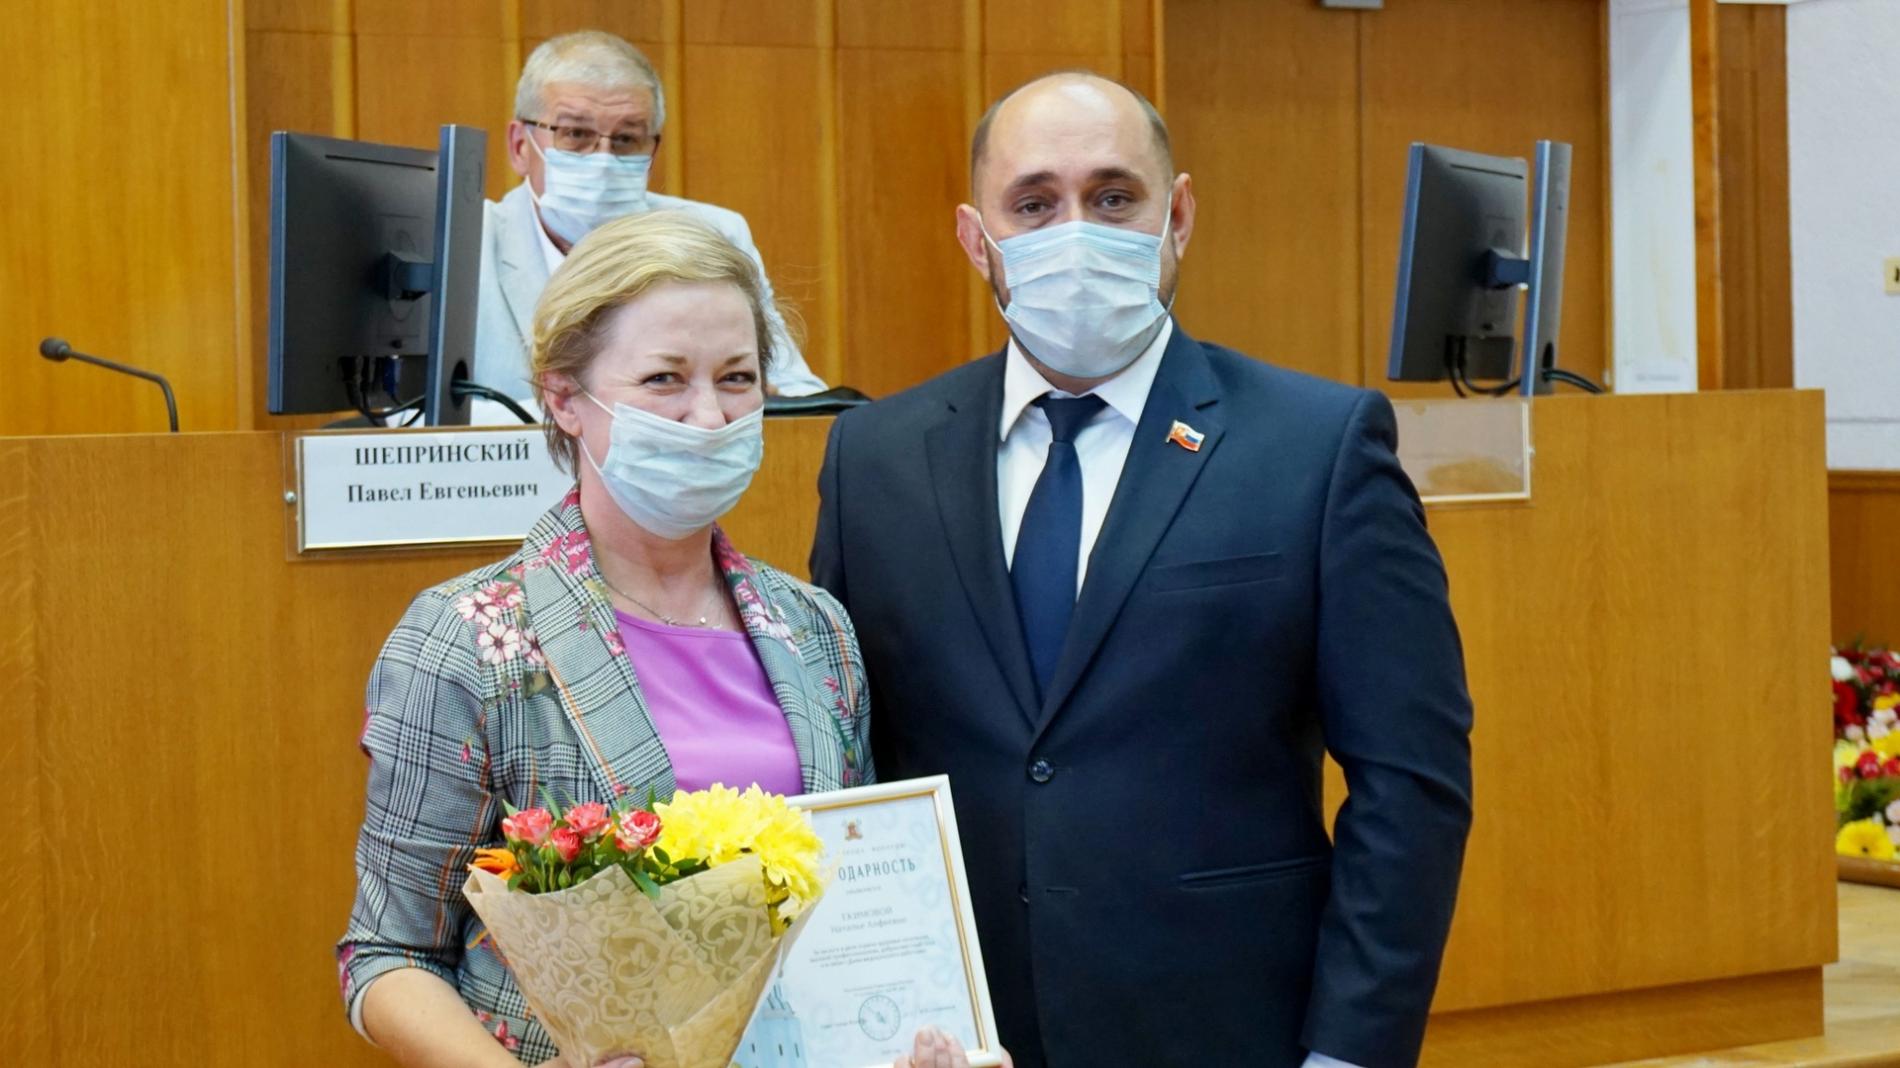 Награды врачам и медсестрам вручили в Вологде